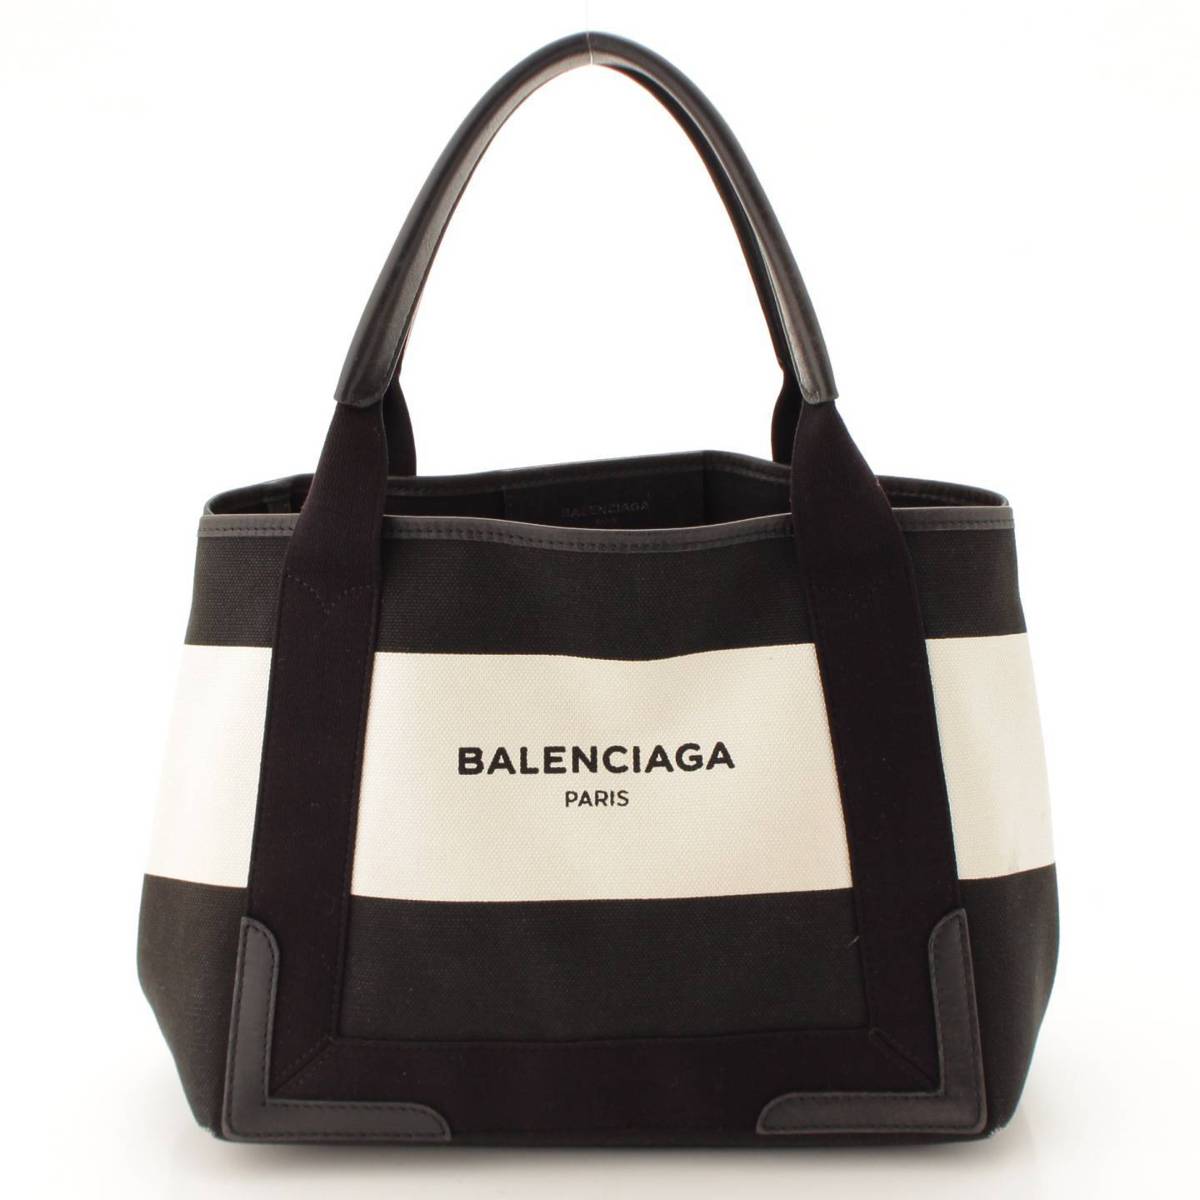 バレンシアガ(Balenciaga) ネイビーカバス S キャンバス ボーダー